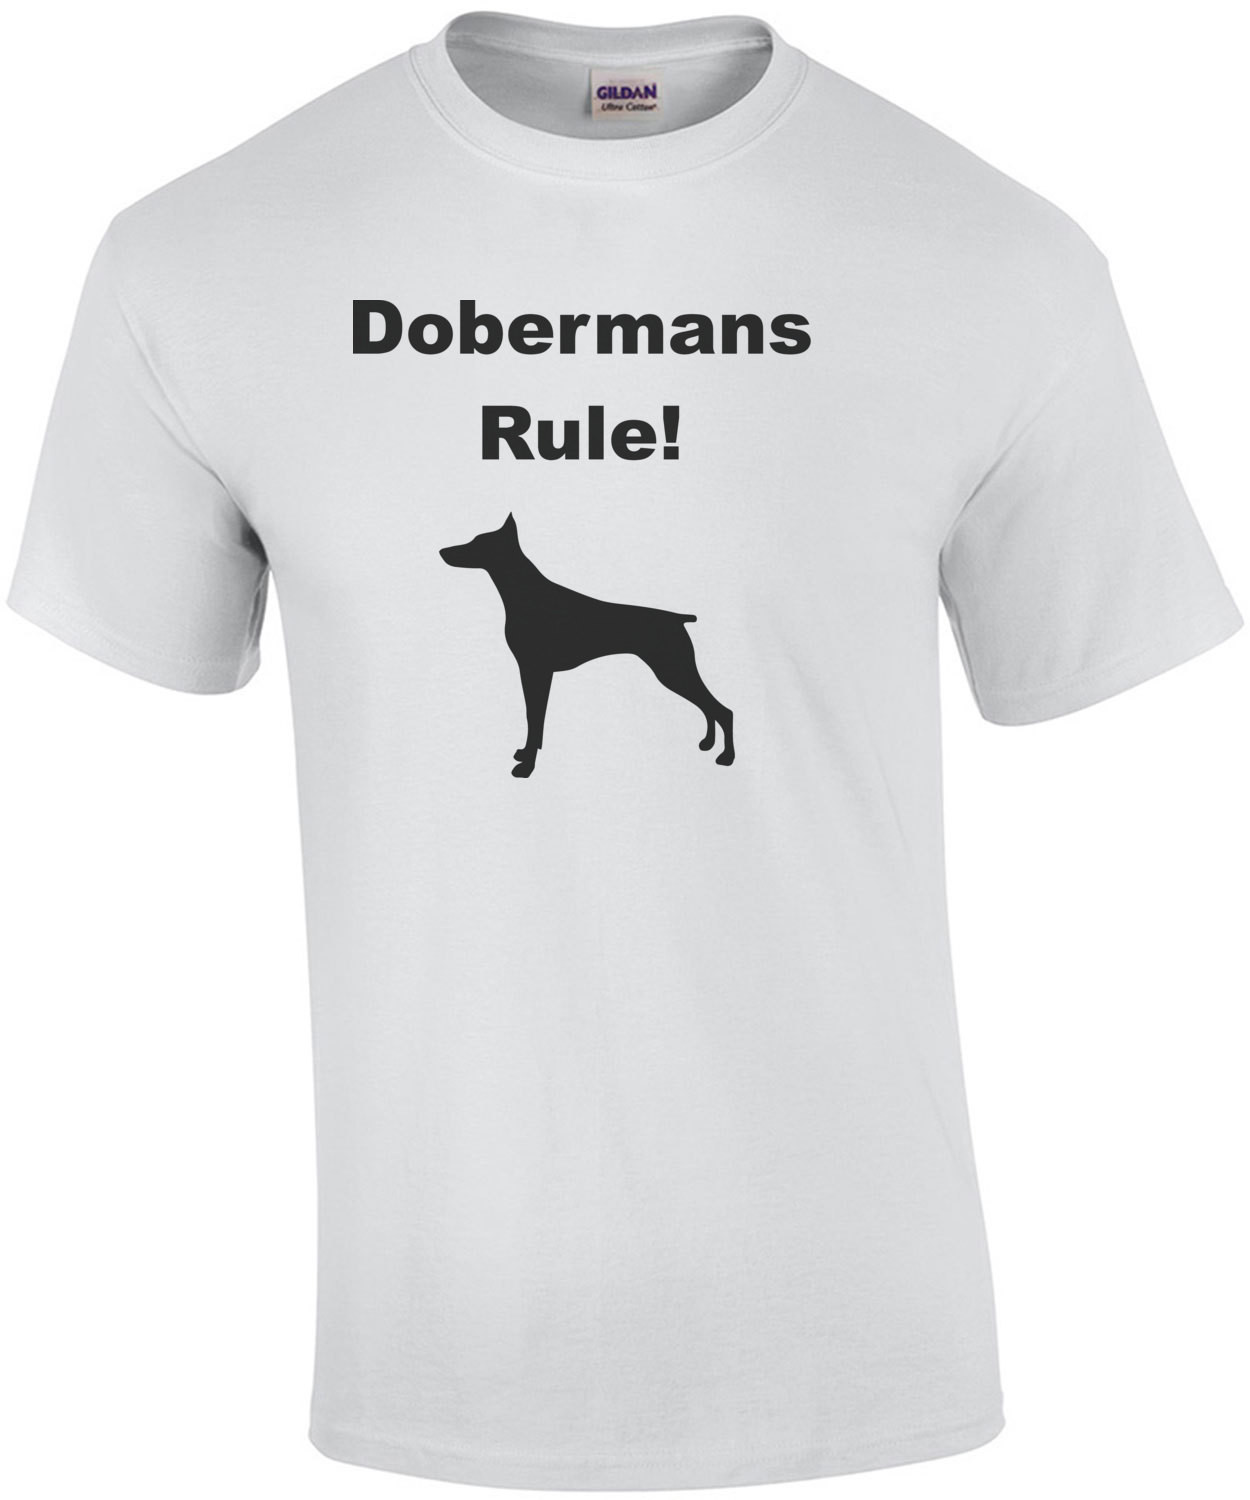 Dobermans Rule! - Doberman Pinscher T-Shirt